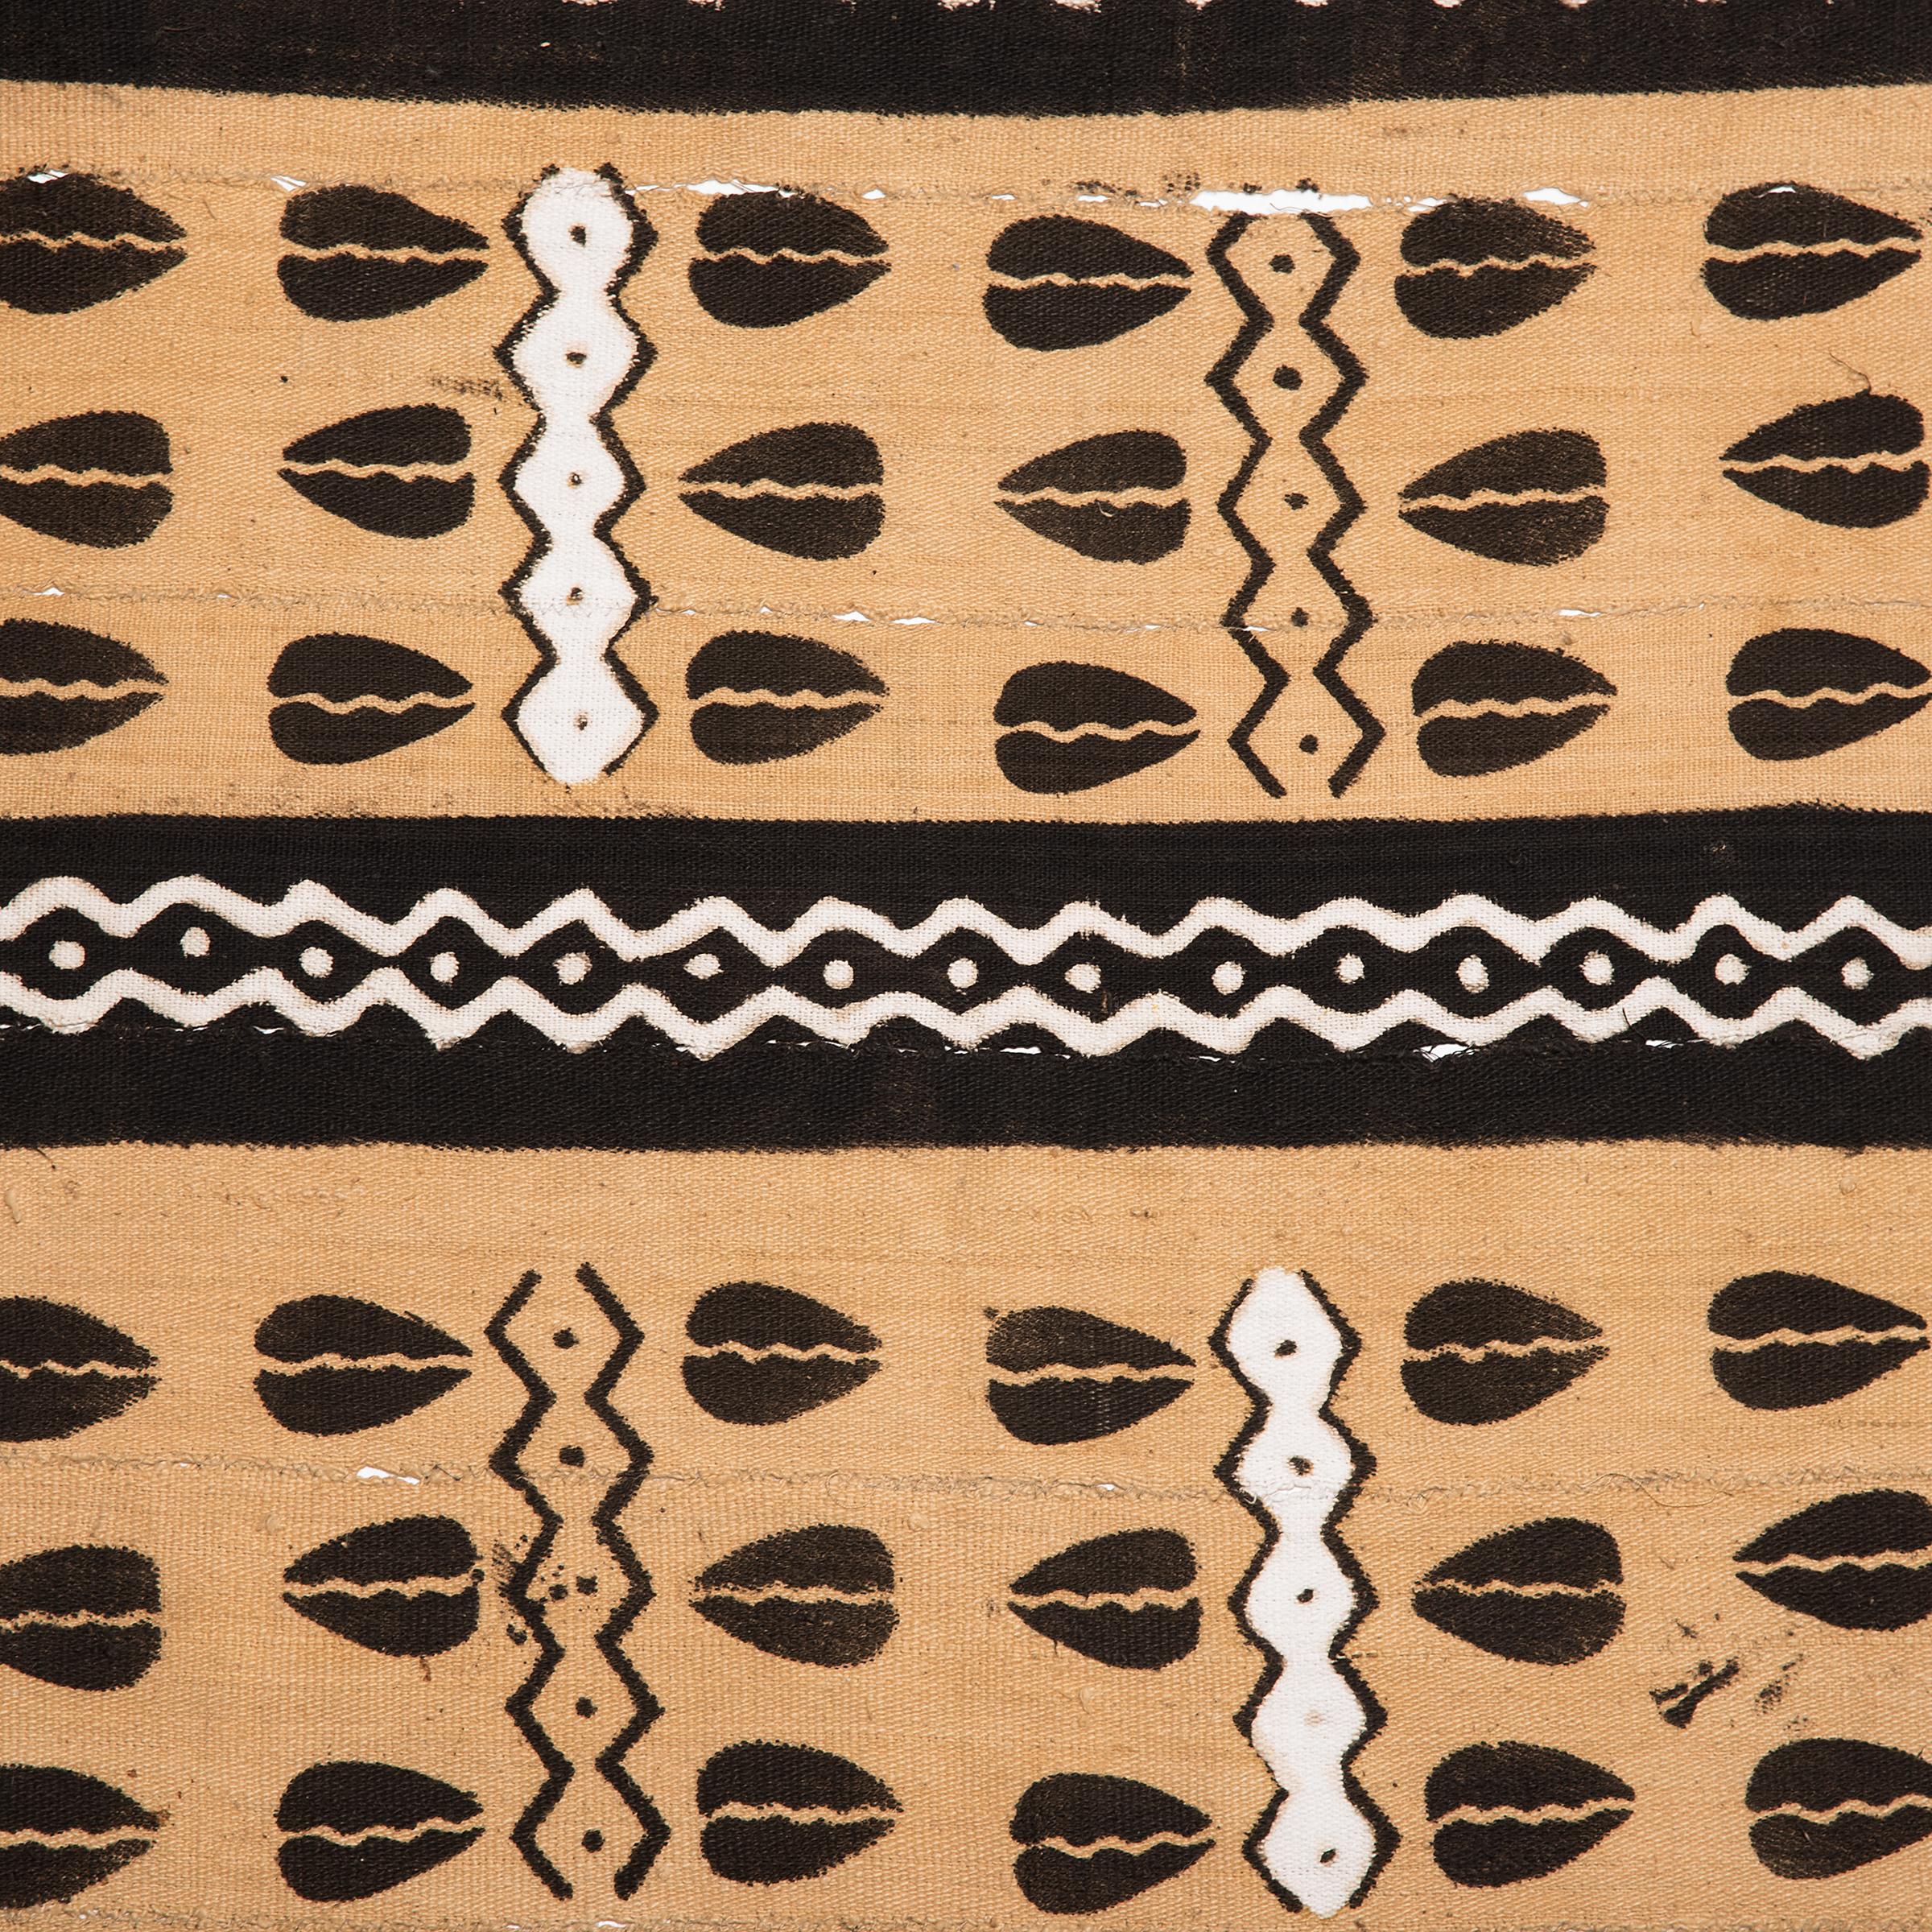 Diese Baumwolltextilien, die gemeinhin als Bogolan oder Bògòlanfini bekannt sind, wurden von Hand gesponnen, handgewebt und dann in einer Technik gefärbt, die in der Bamana-Region in Mali seit Jahrhunderten weitergegeben wird. In der traditionellen